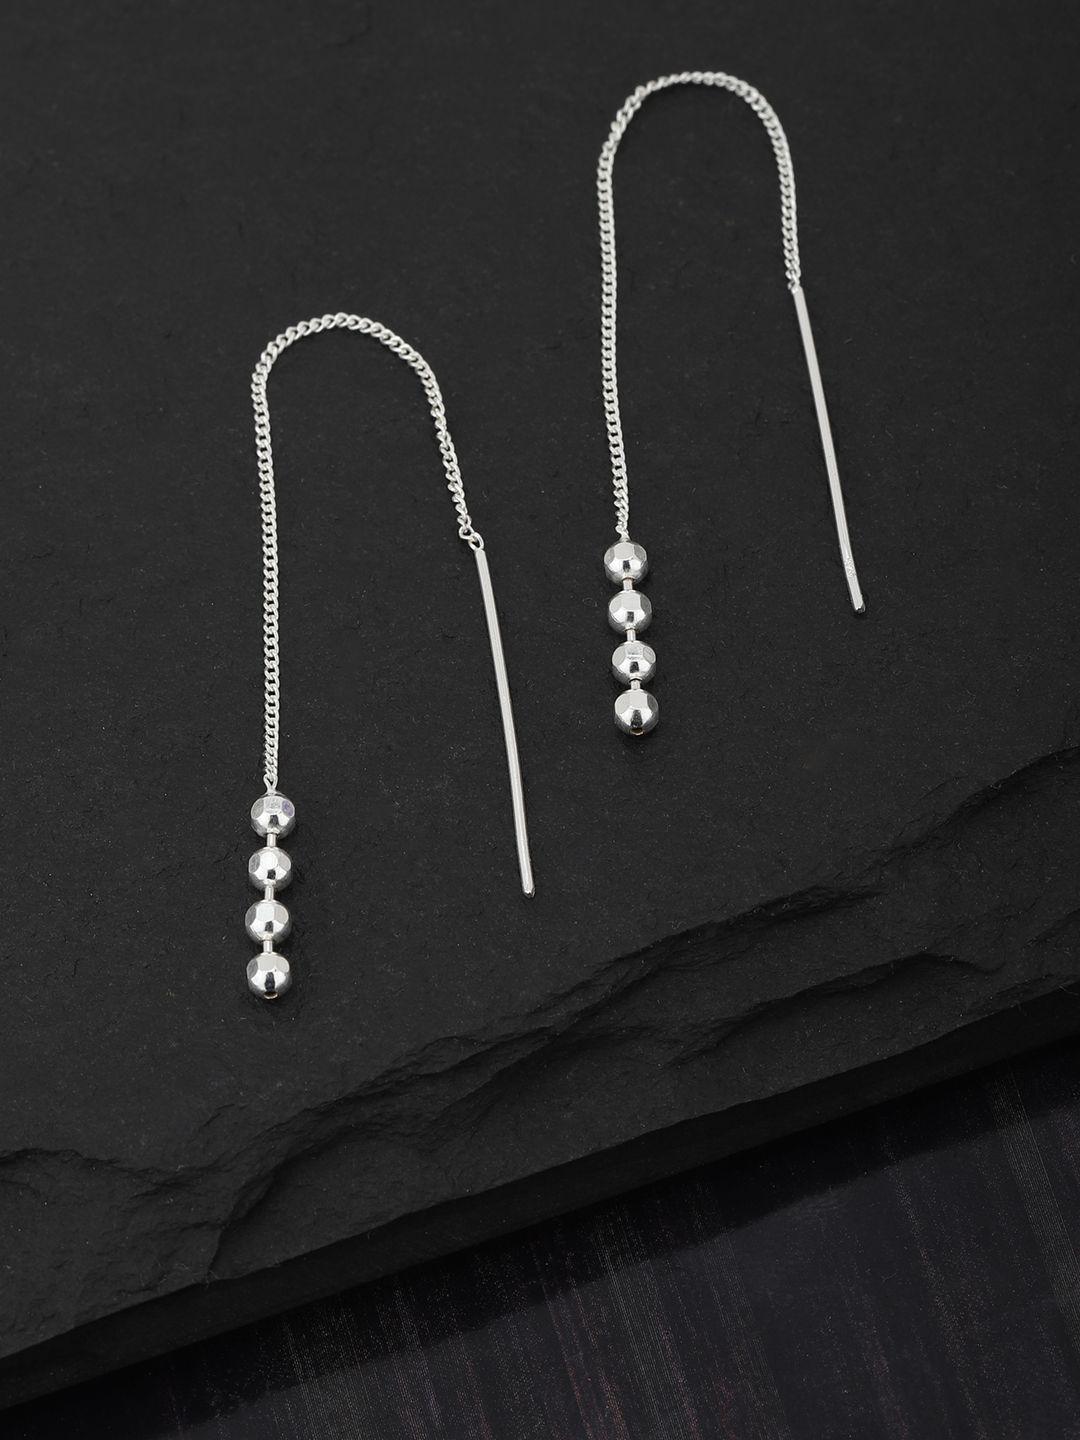 carlton london 925 sterling silver needle drop earrings